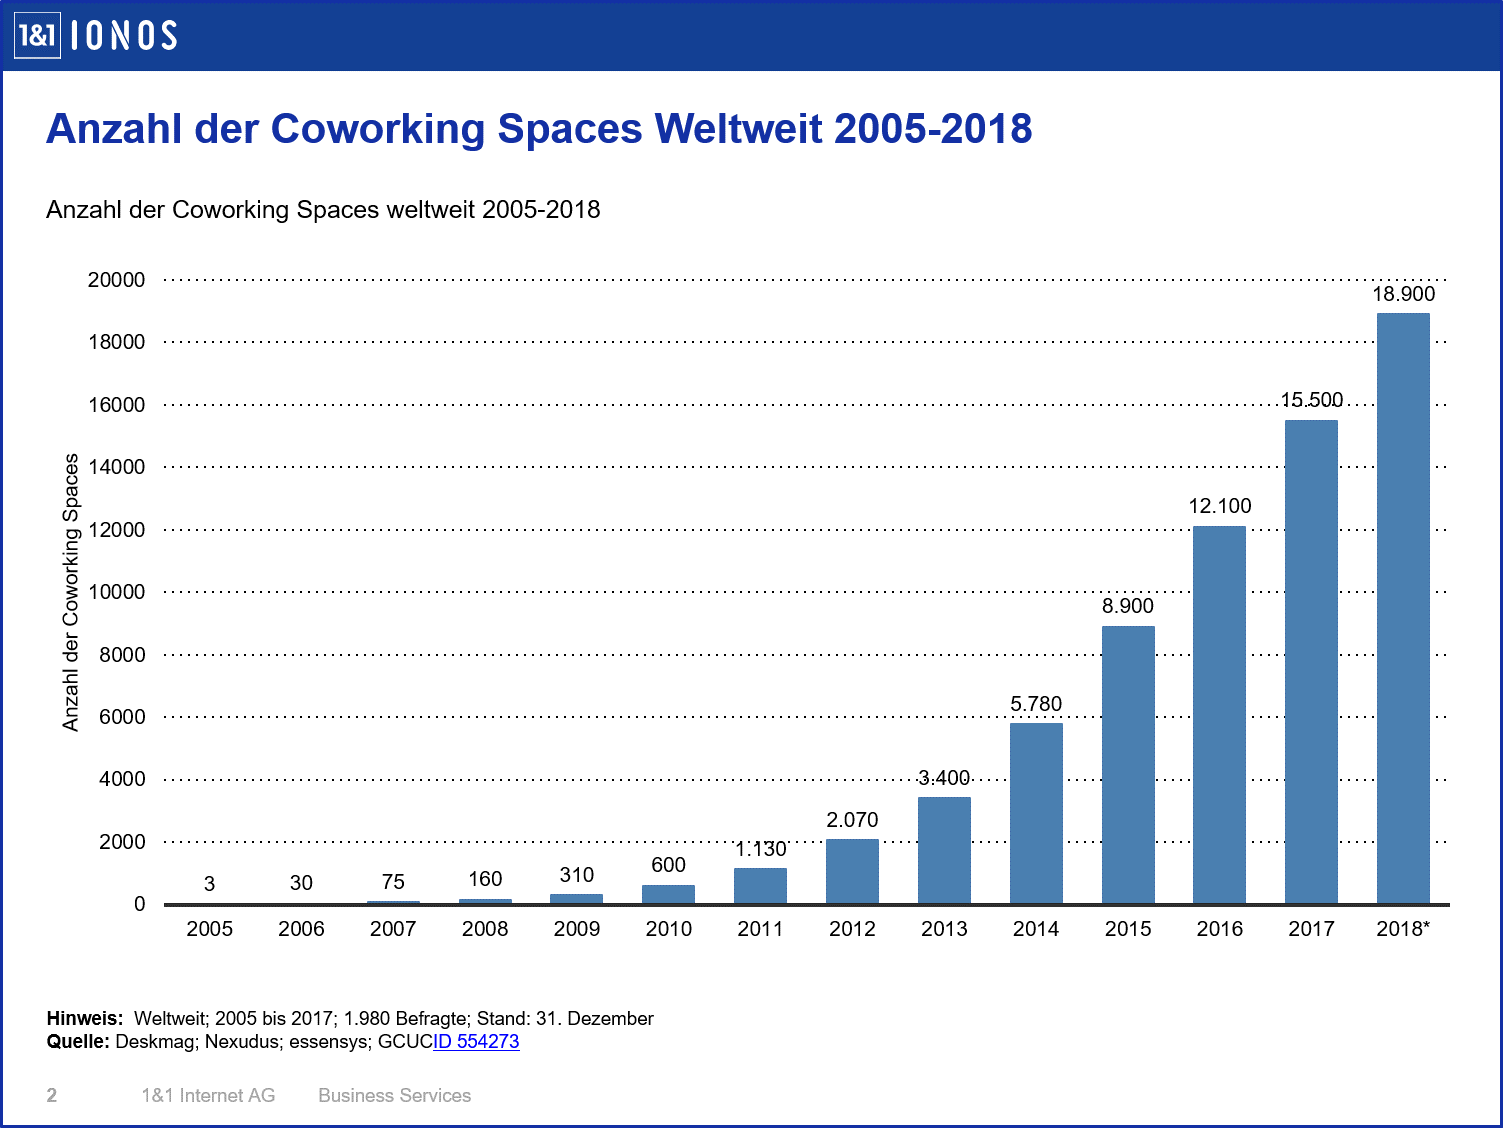 Anzahl der Coworking Spaces von 2005 bis 2018